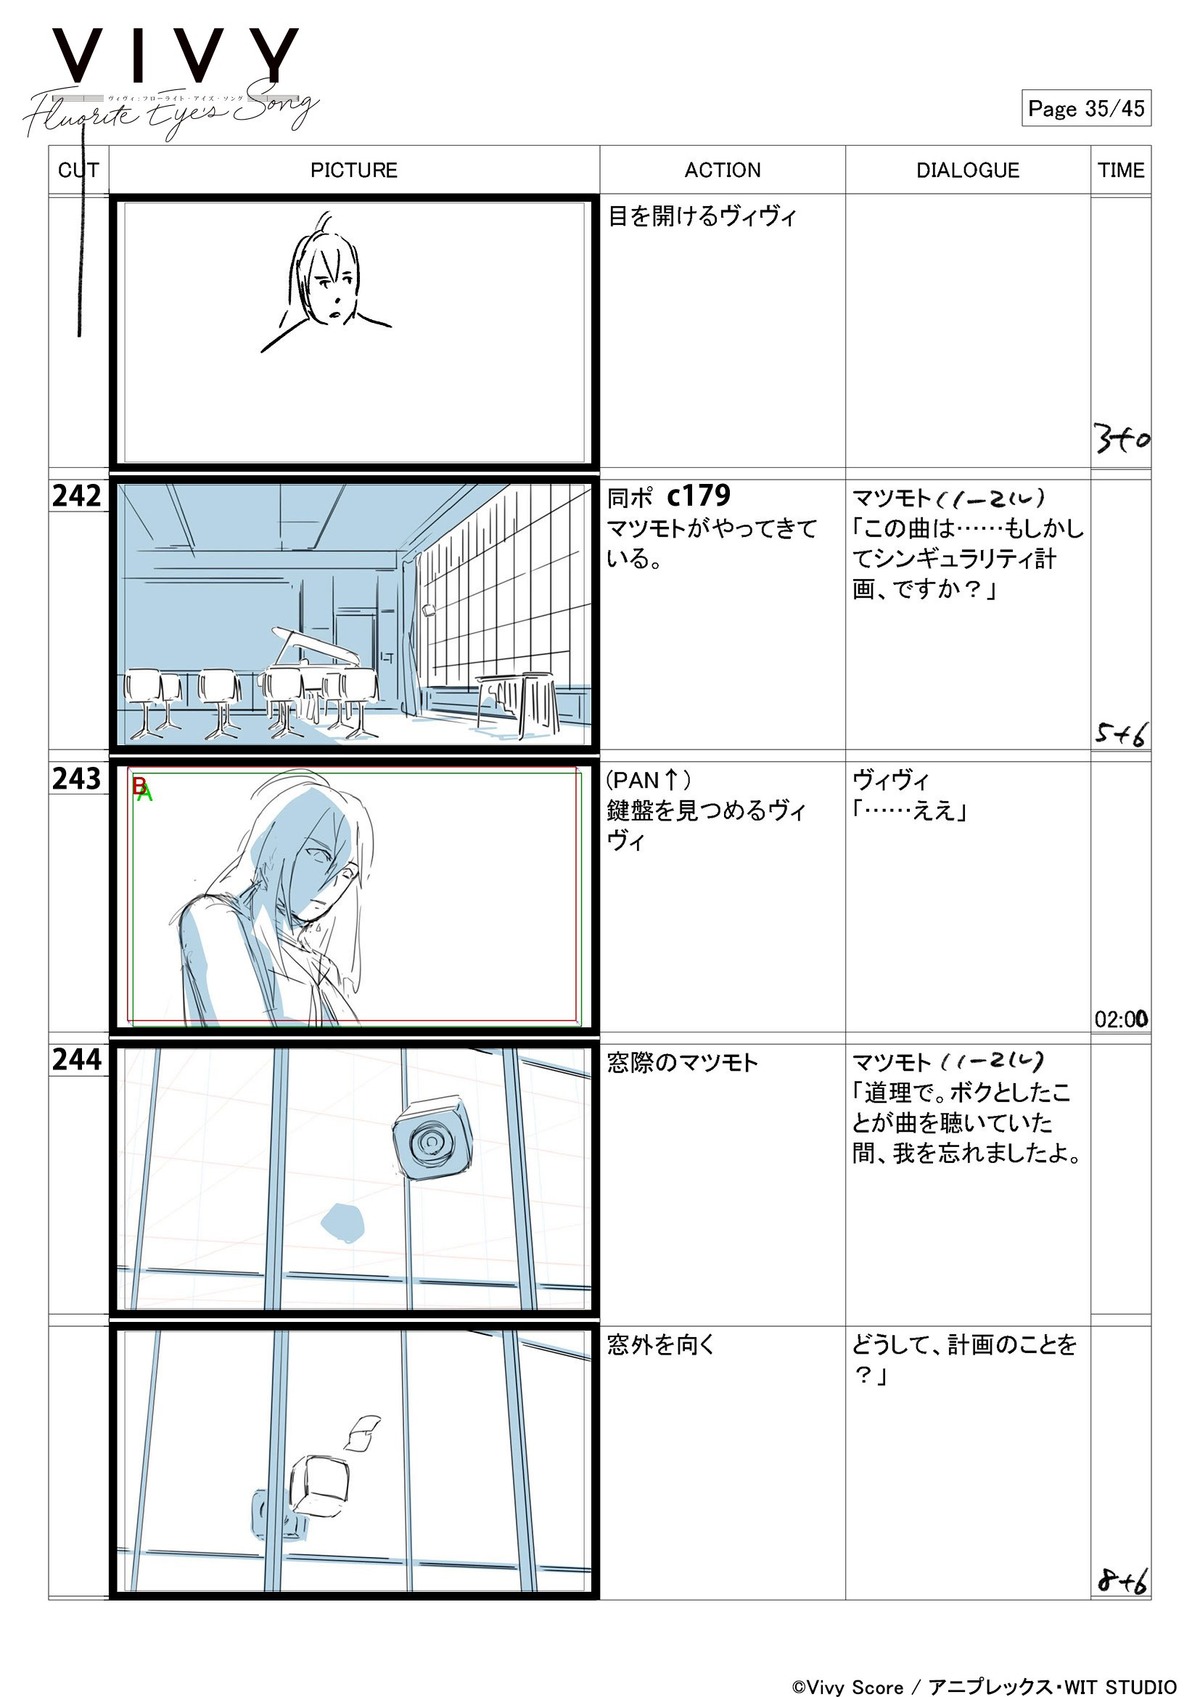 production_materials storyboard takashi_kawabata vivy_-_fluorite_eye'_s_song